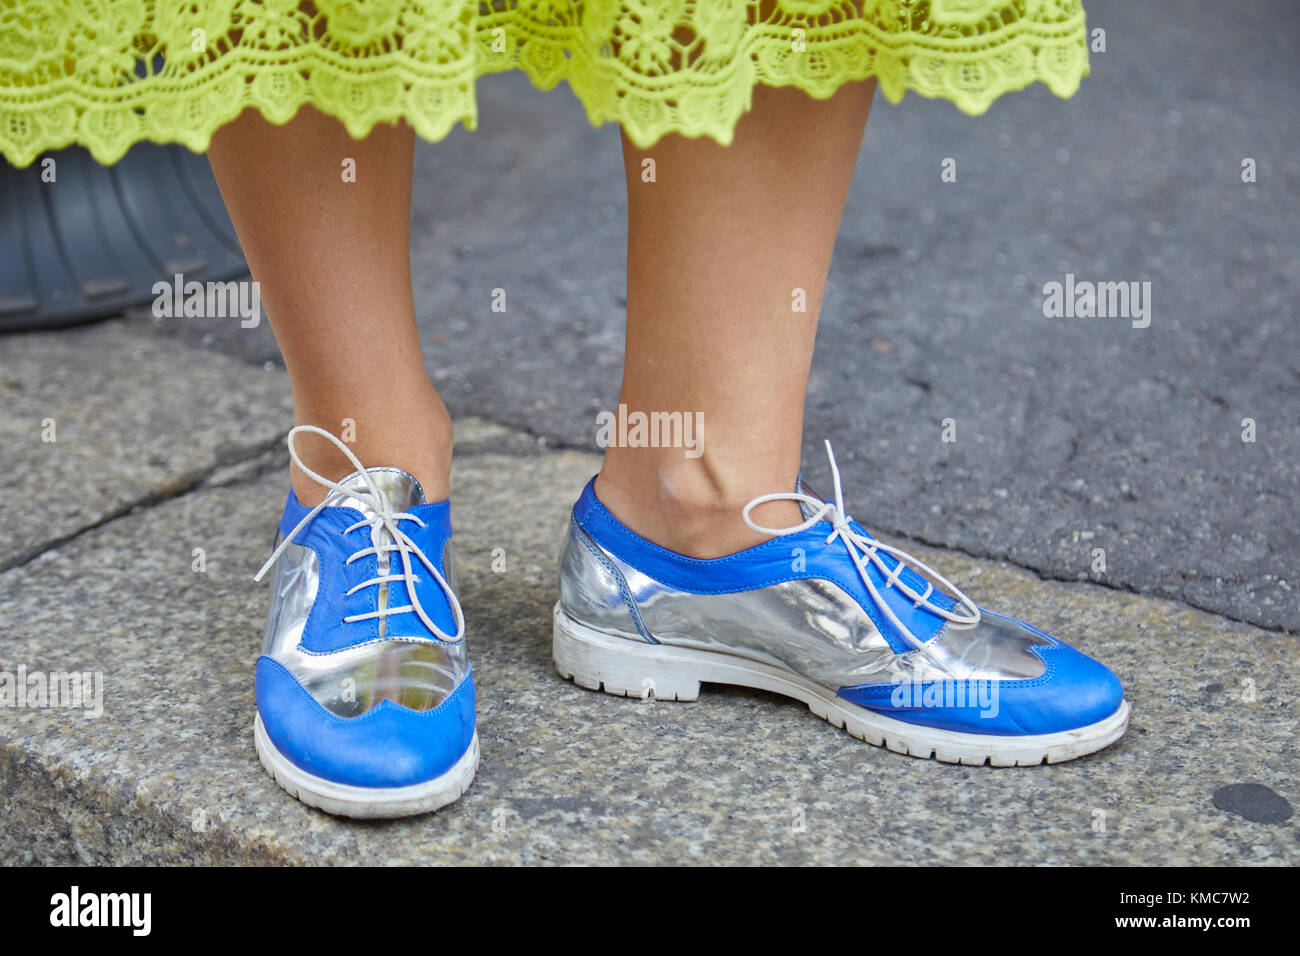 Milan - 23 septembre : femme avec bleu et argent chaussures et jupe en dentelle jaune avant d'Ermanno scervino fashion show, Milan Fashion week street style sur Banque D'Images